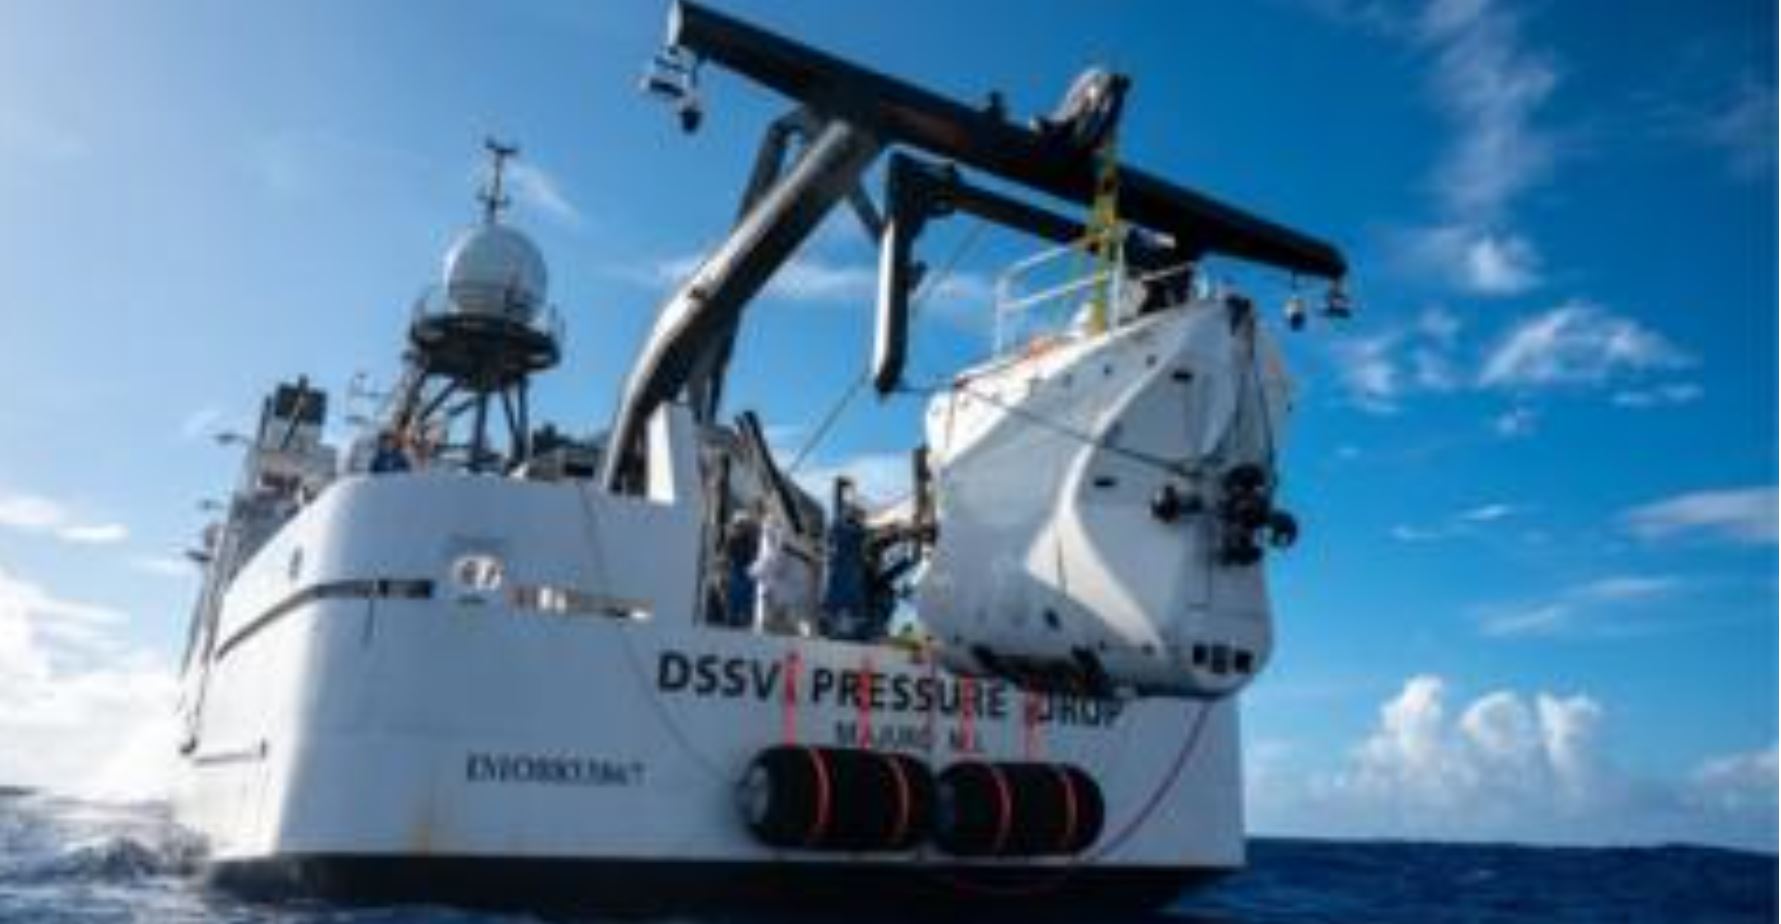 두 사람이 마리아나 해구 탐사에 이용한 잠수정 DSV 리미팅 팩터가 모선에서 끌어올려지고 있다.무게만 12톤 나간다. BBC 홈페이지 캡처